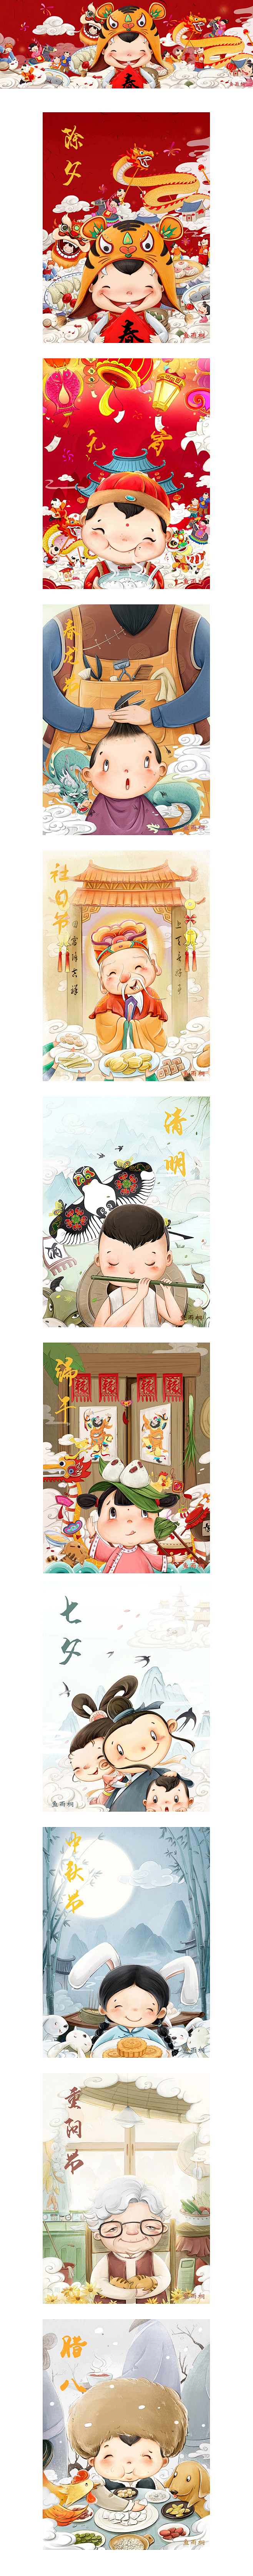 传统节日插画春节、元宵节、春龙节、社日节...